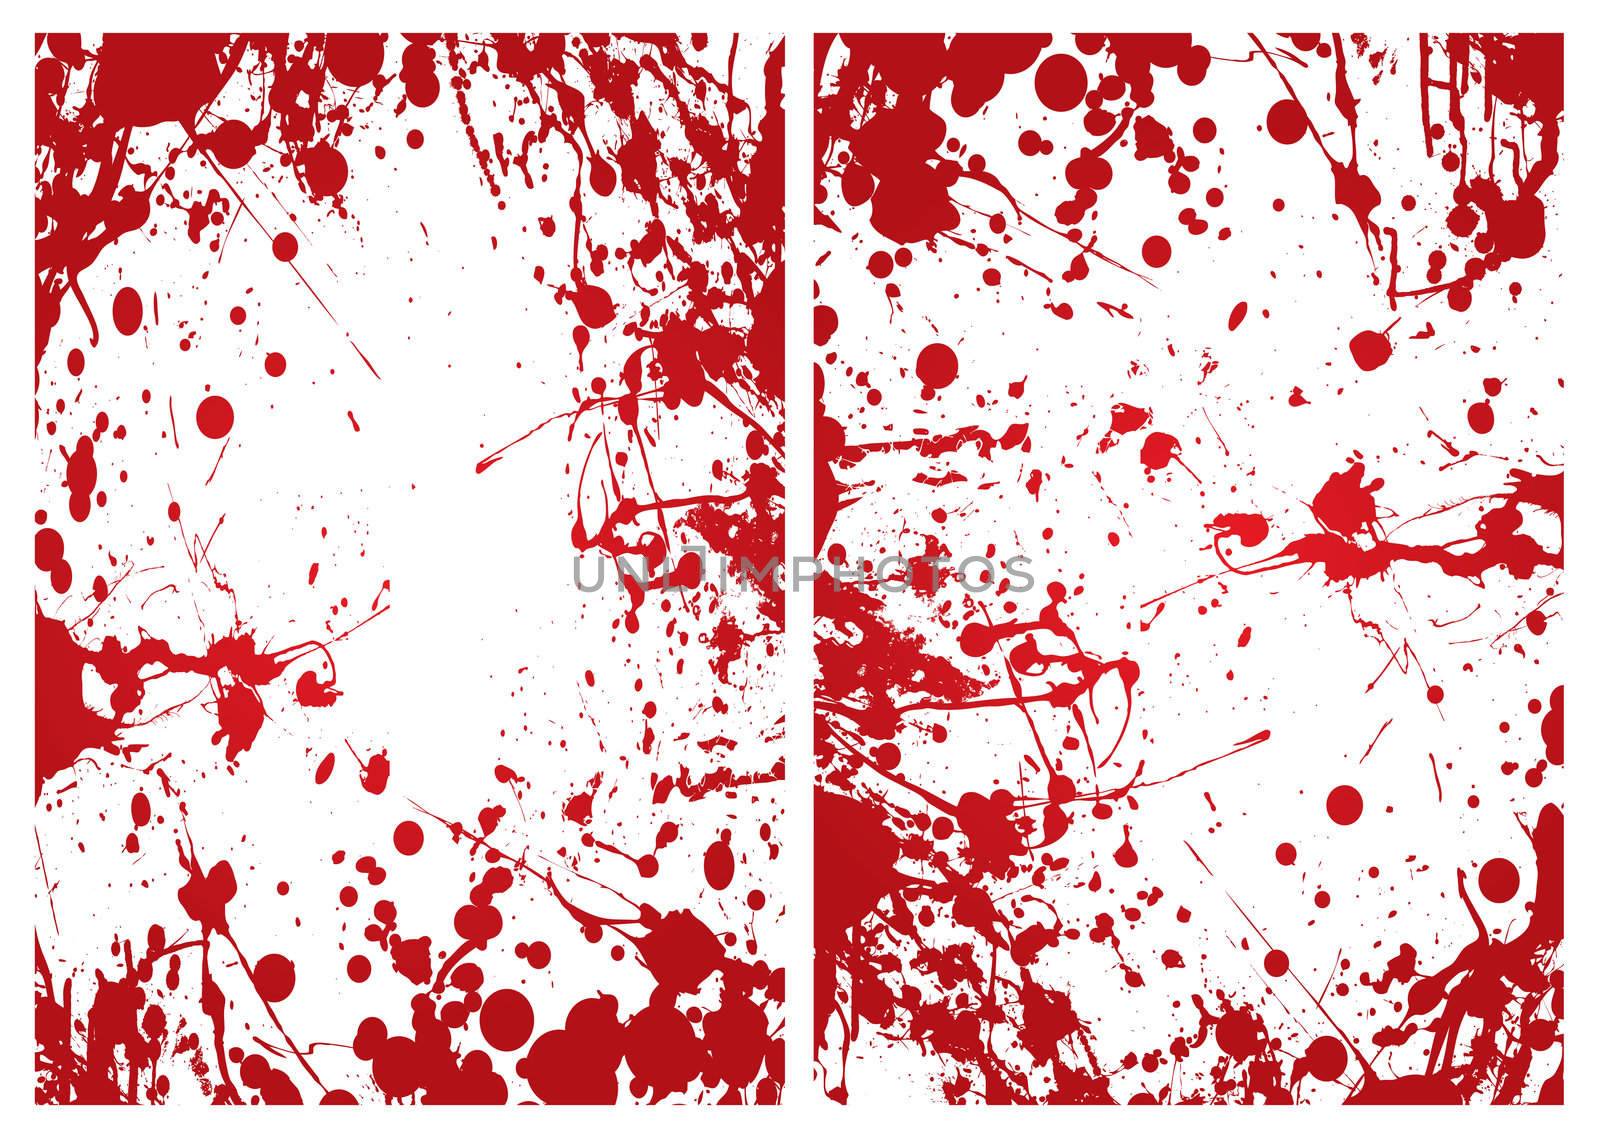 Red grunge ink splat blood border or frame background